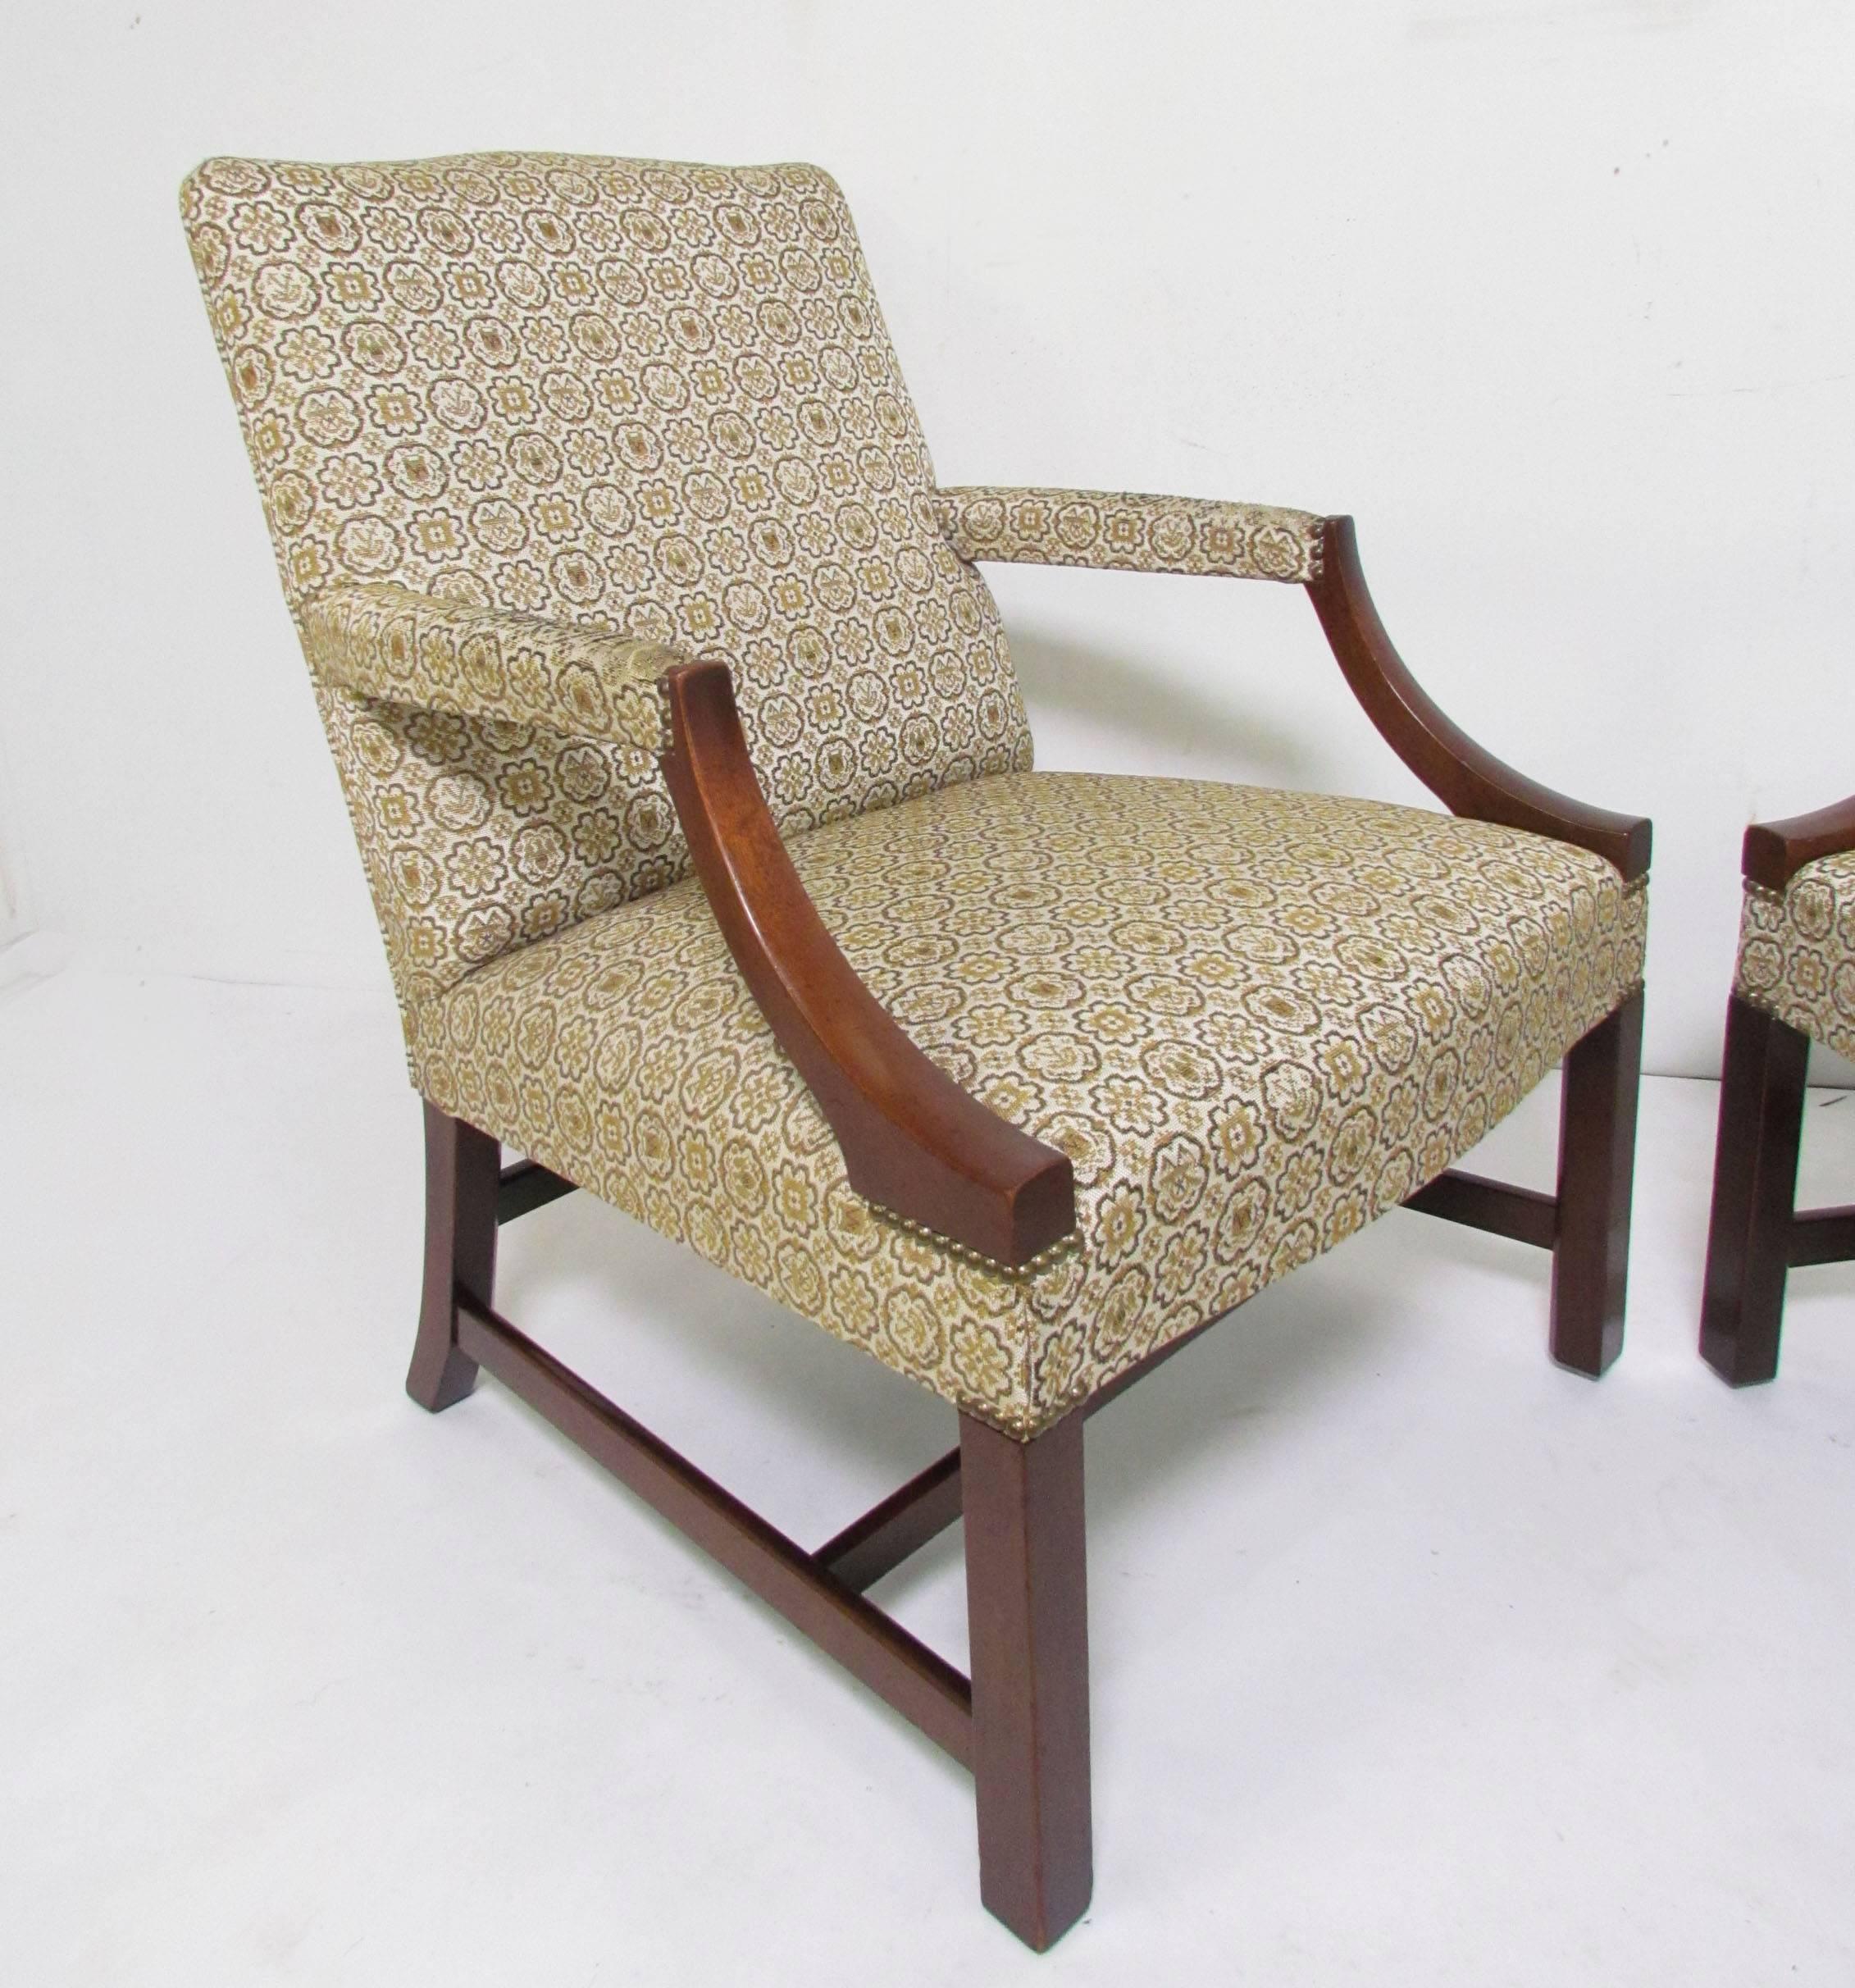 gainsborough chairs